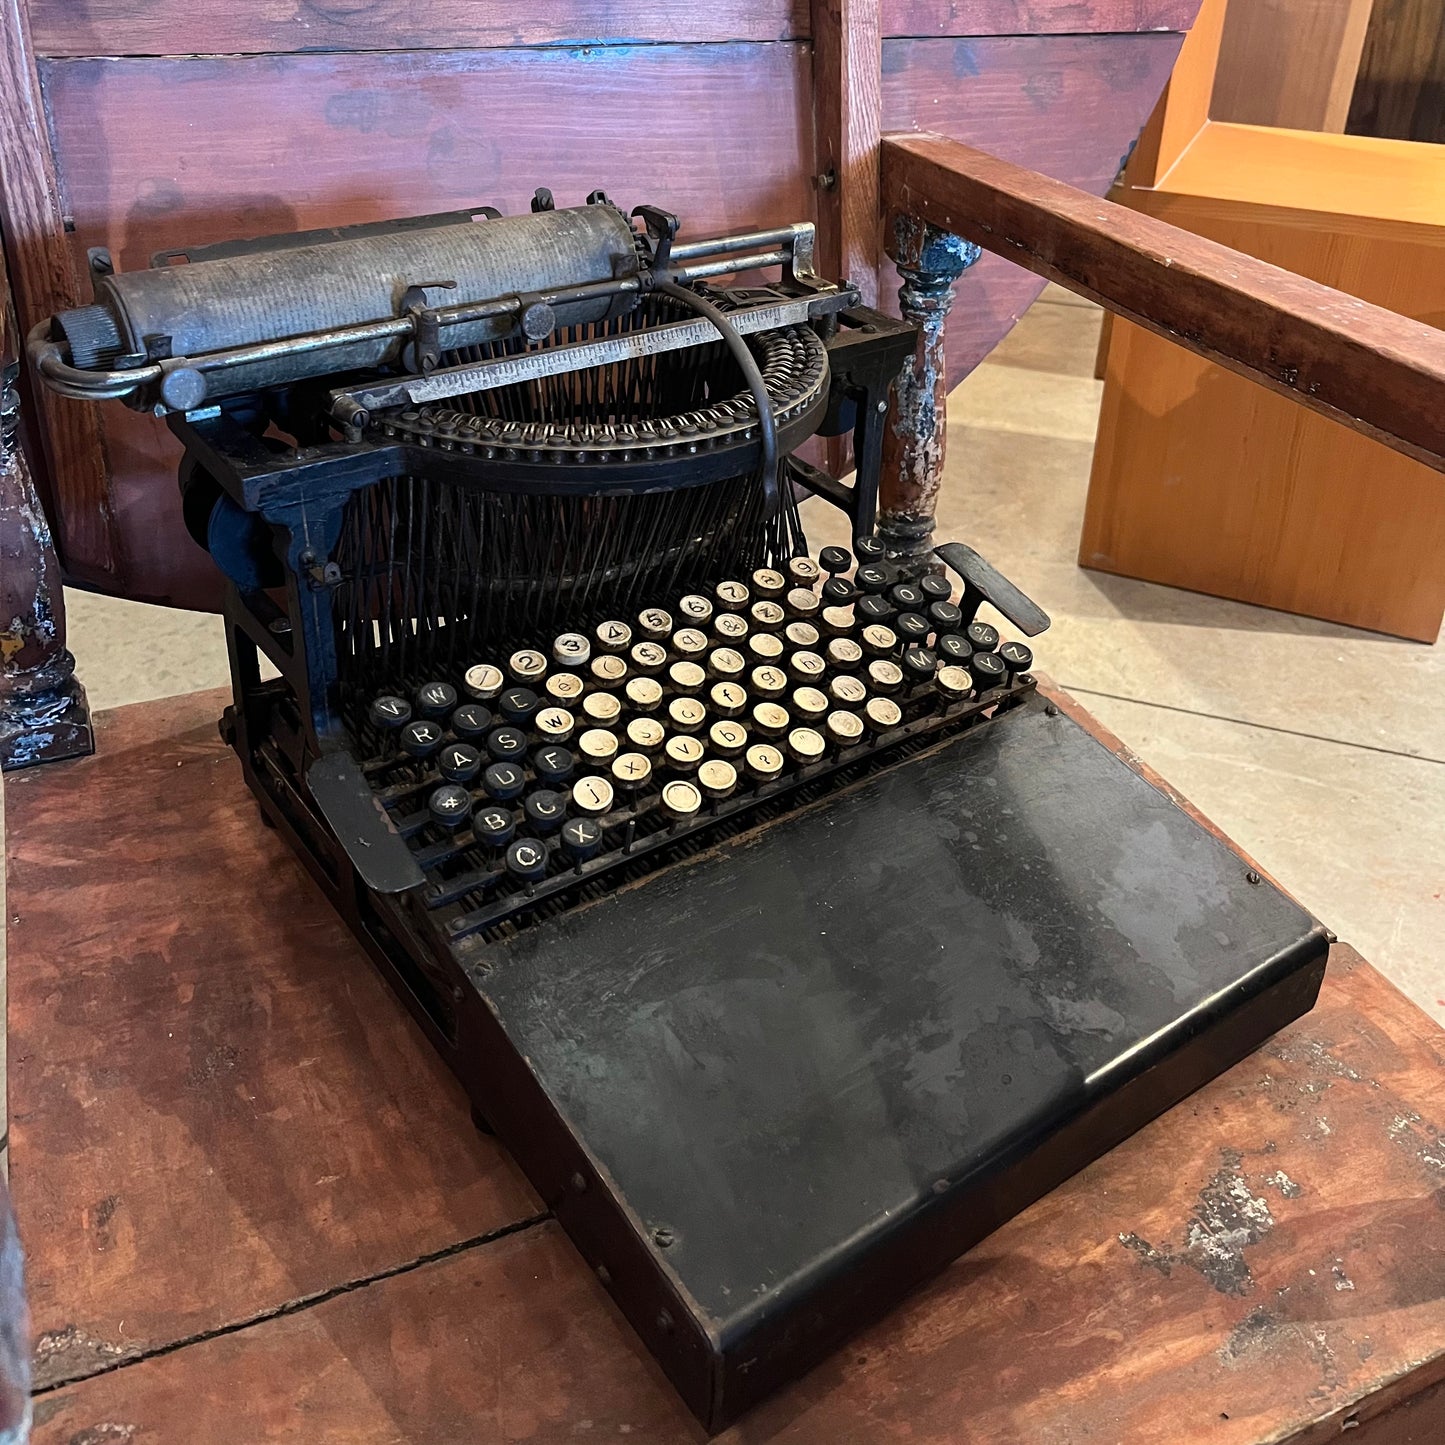 Machine à écrire Caligraph 2 par American Writing Machine Company, 1882.